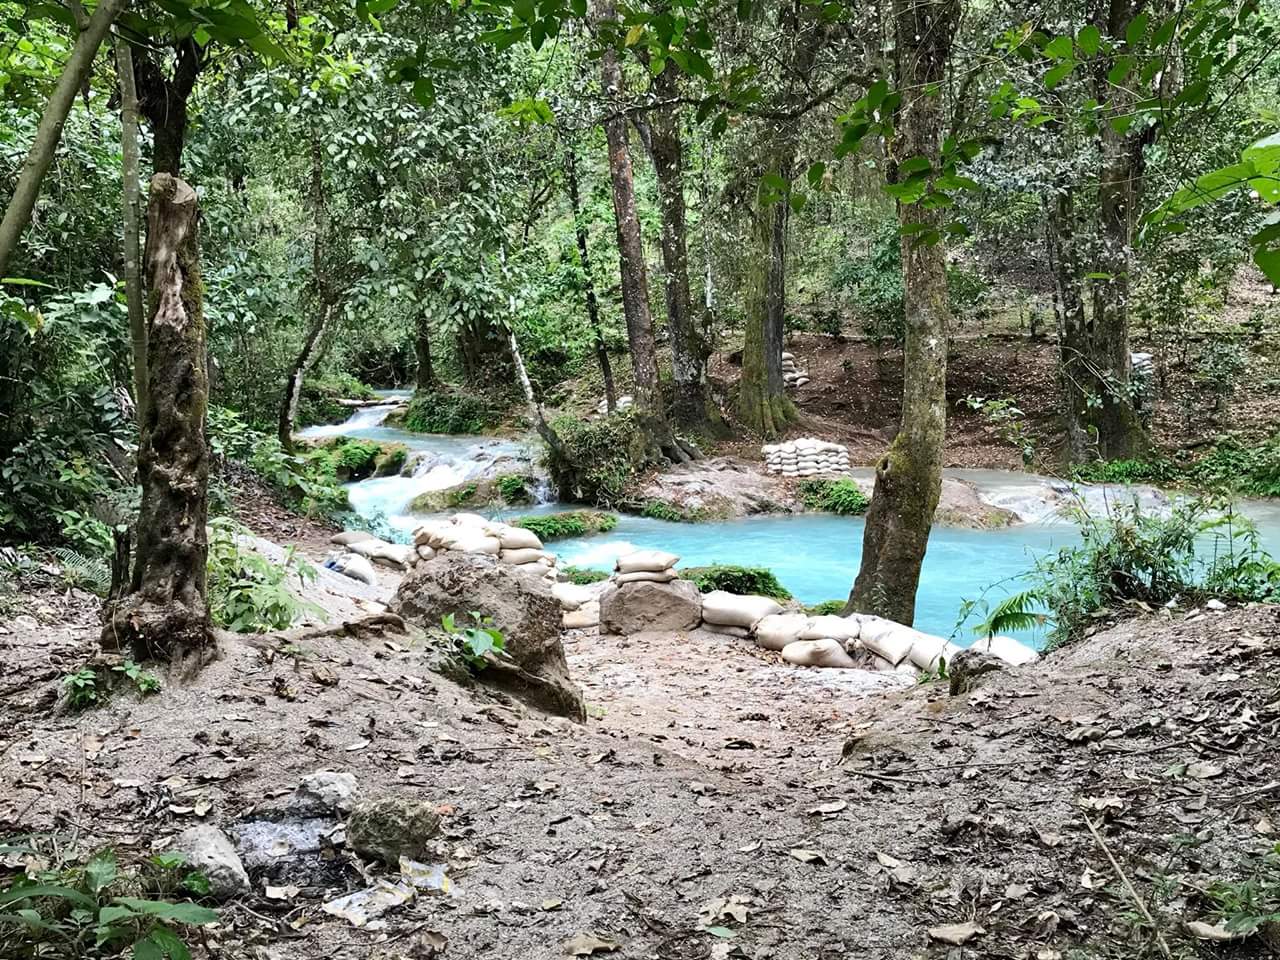 Río Azul Jacaltenango